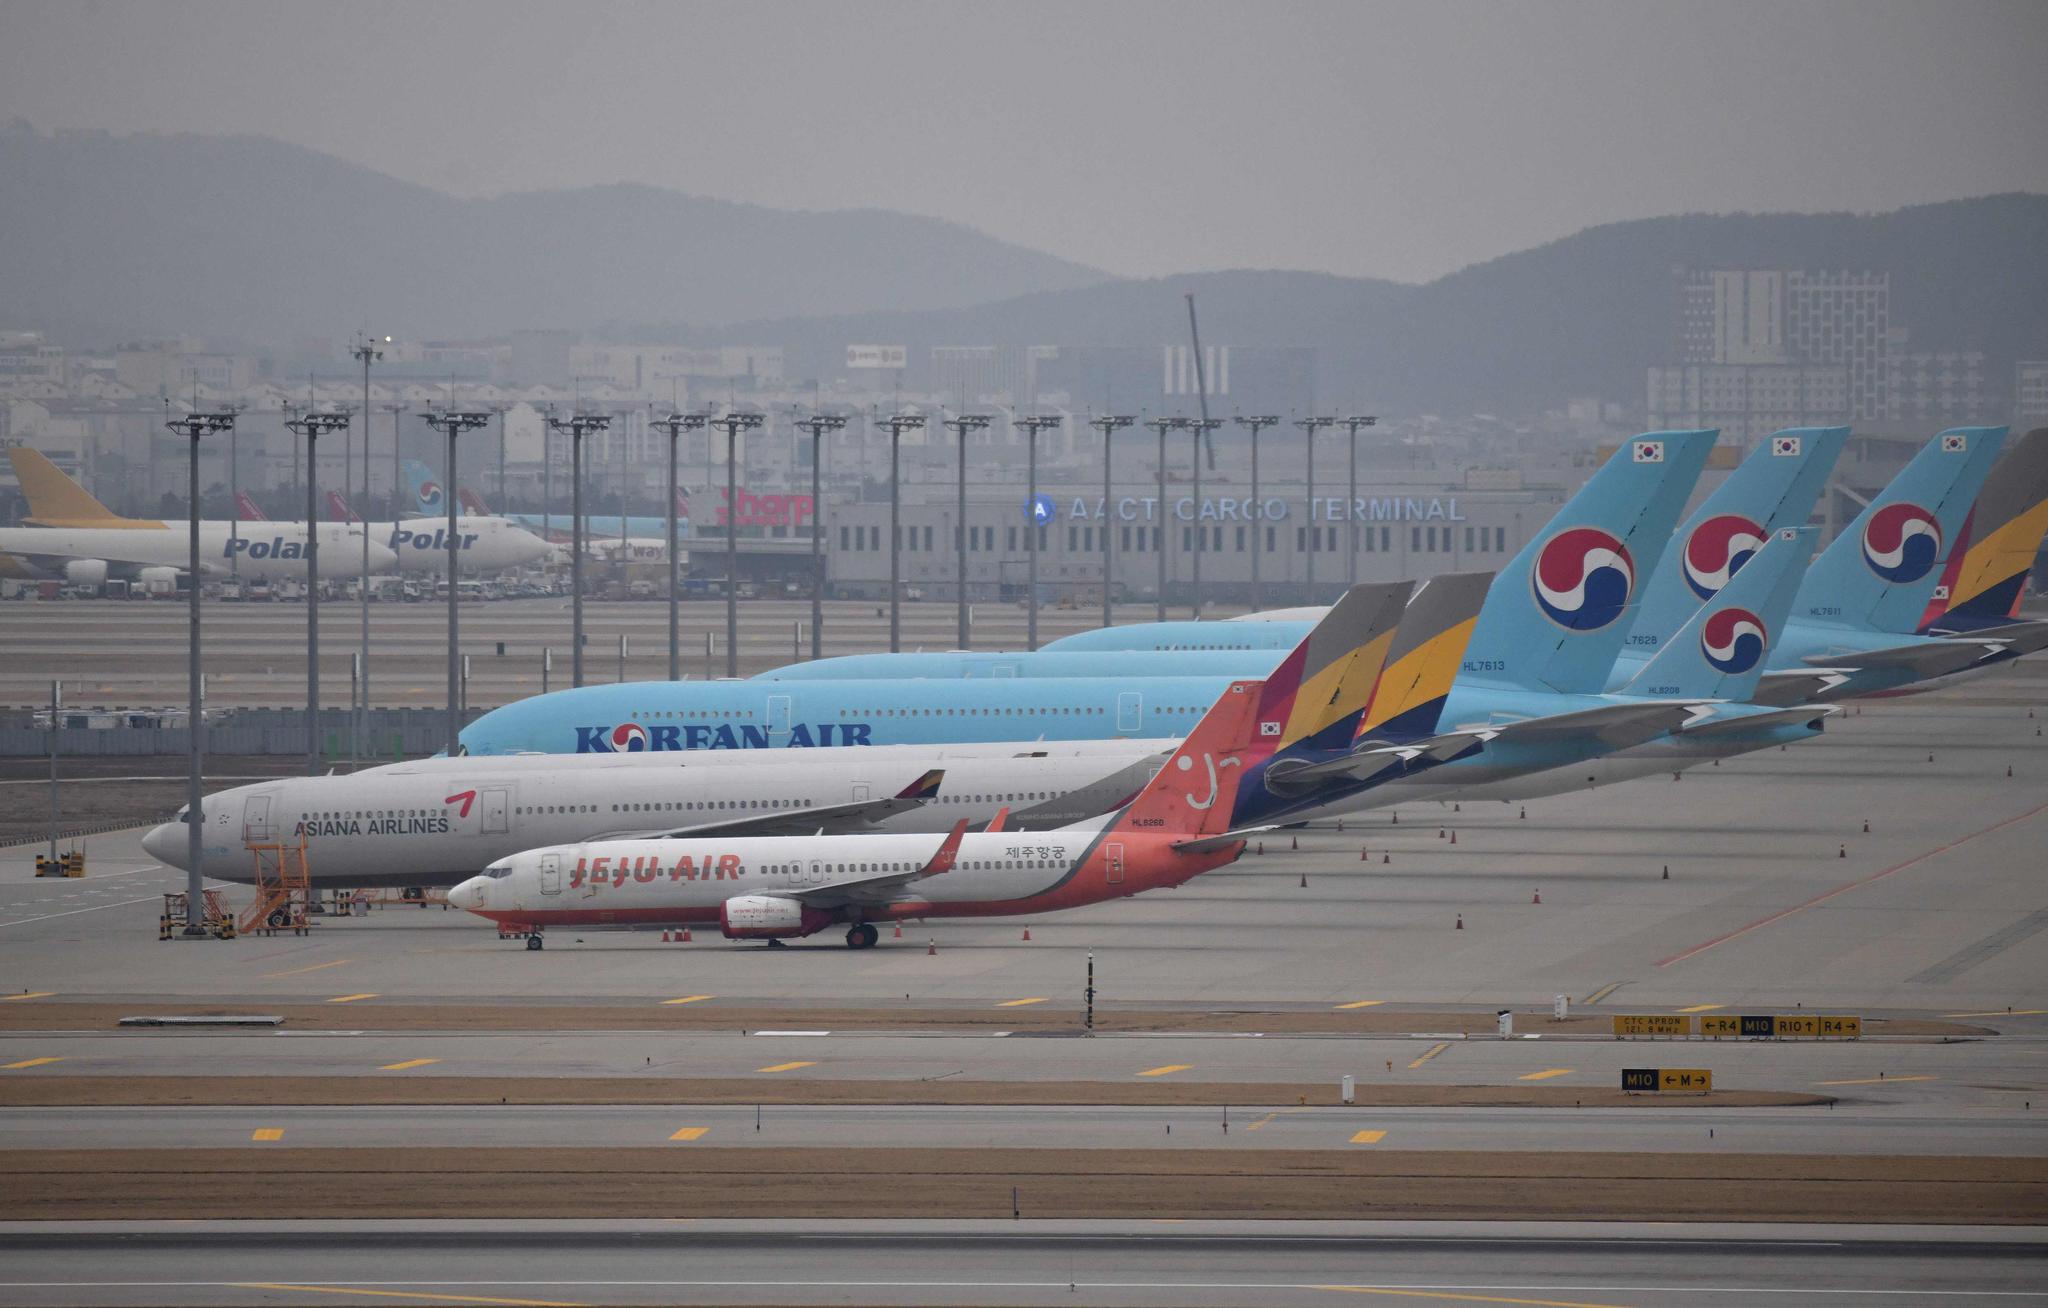 大韩航空推出特别飞机涂装 庆祝成立50周年|大韩航空_新浪财经_新浪网